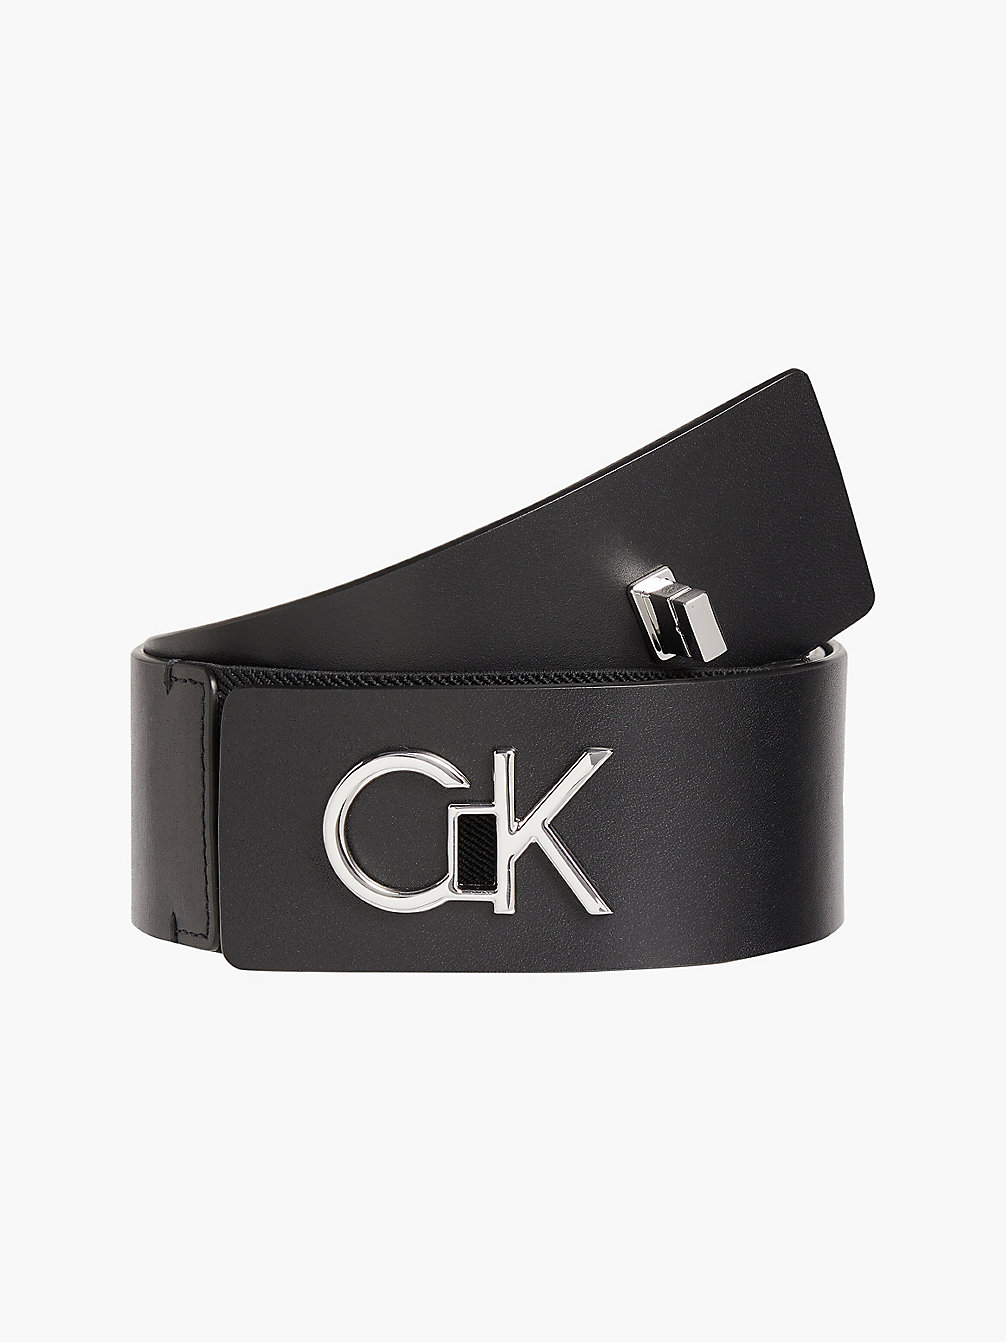 CK BLACK Brede Leren Hoge-Tailleriem undefined dames Calvin Klein